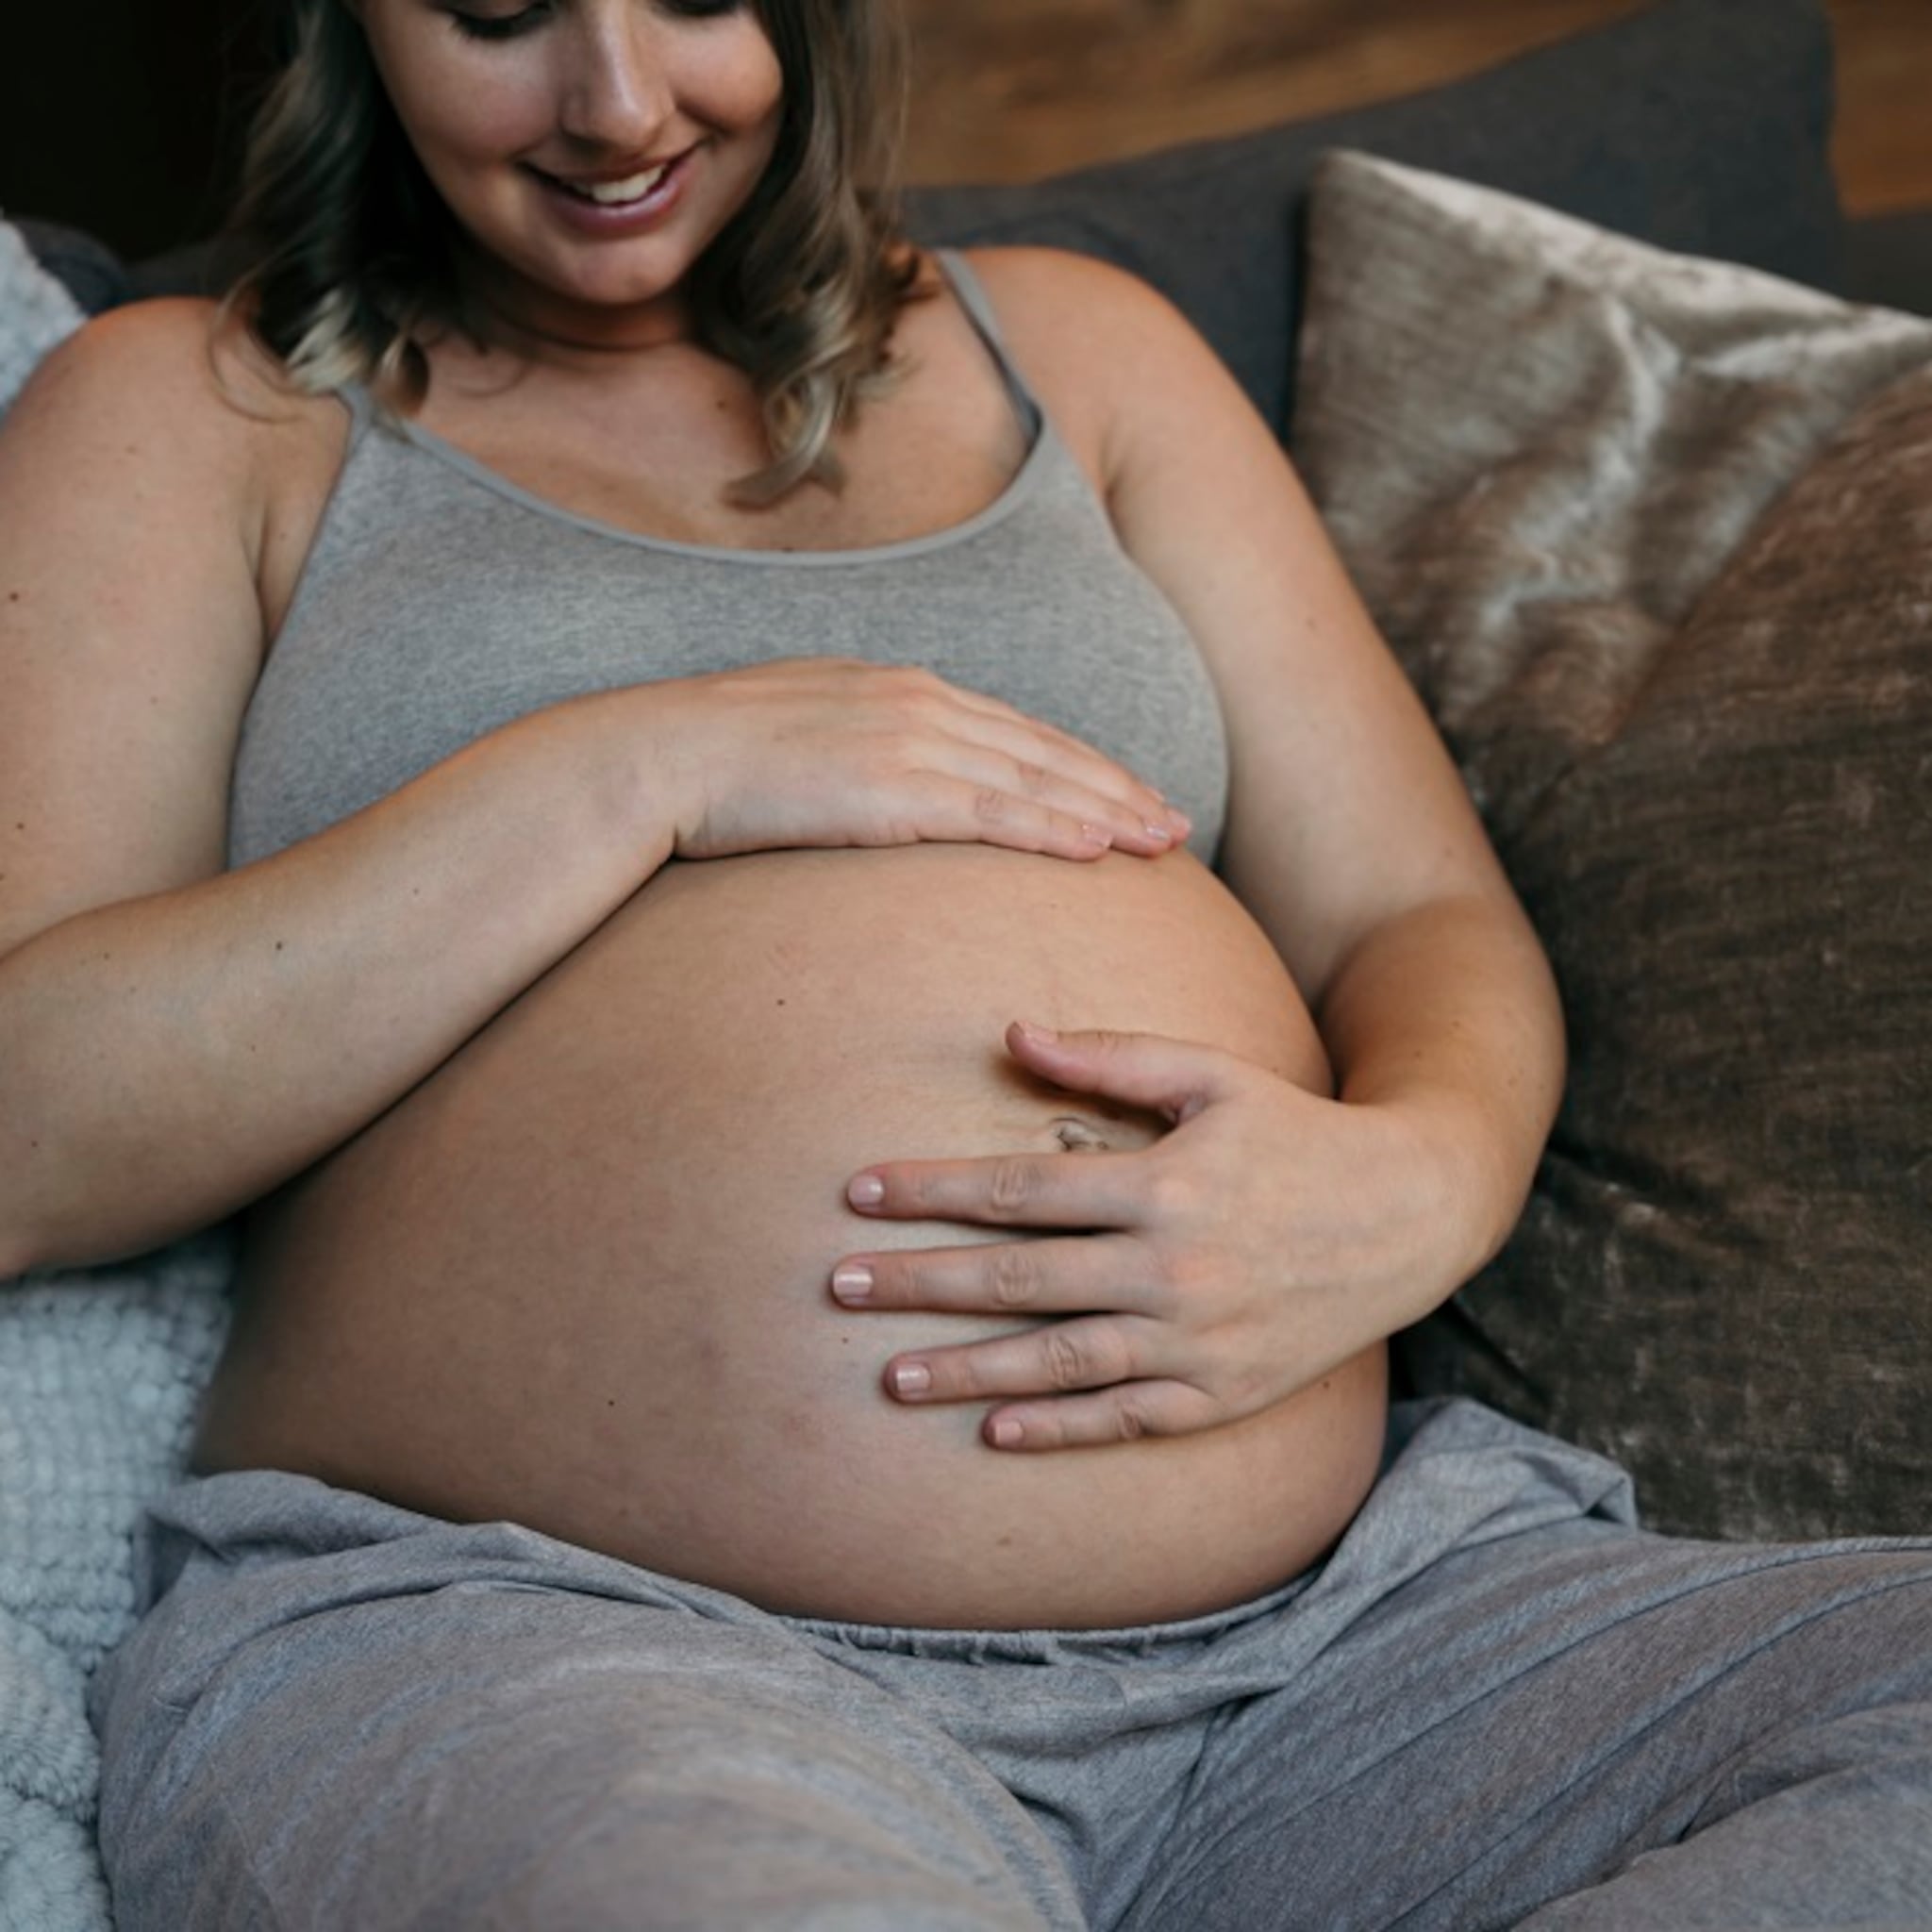 zwangerschapsverlof-wat-zijn-je-rechten